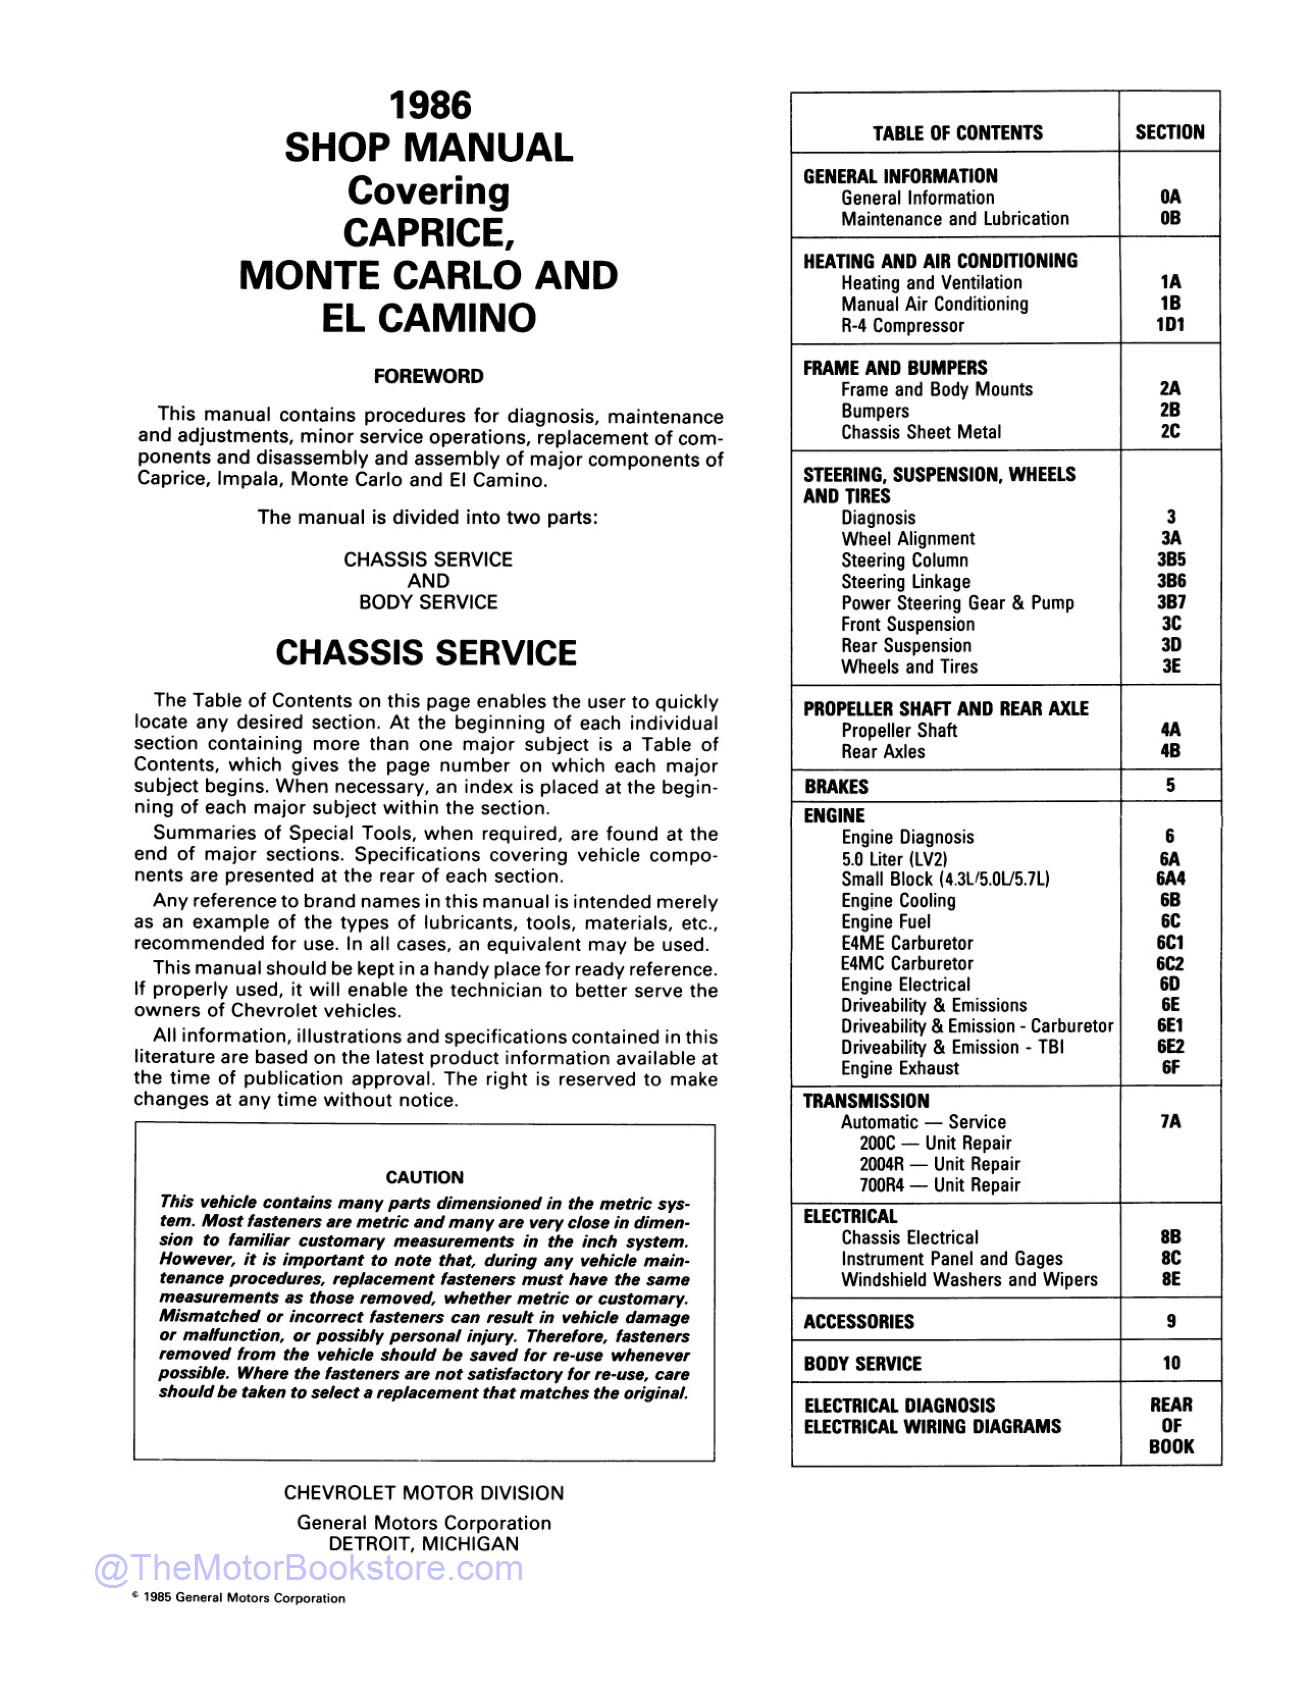 1986 Chevy Monte Carlo, El Camino, Caprice Shop Manual  - Table of Contents